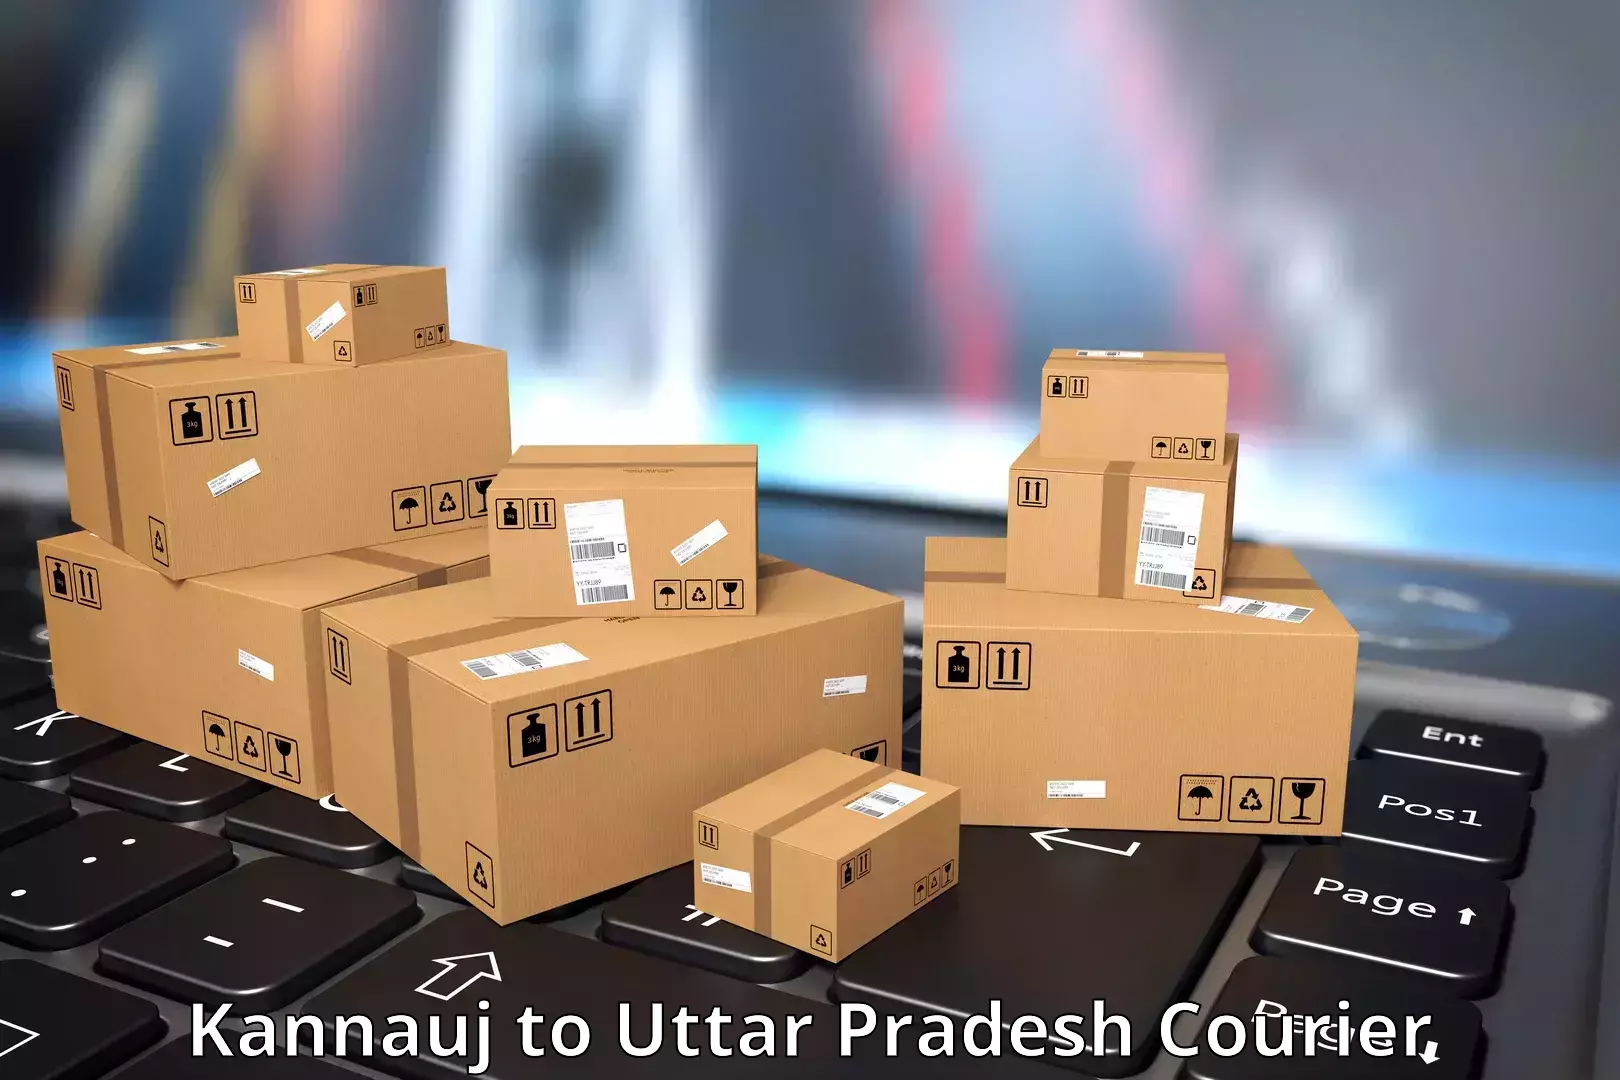 Customer-centric shipping in Kannauj to Bansi